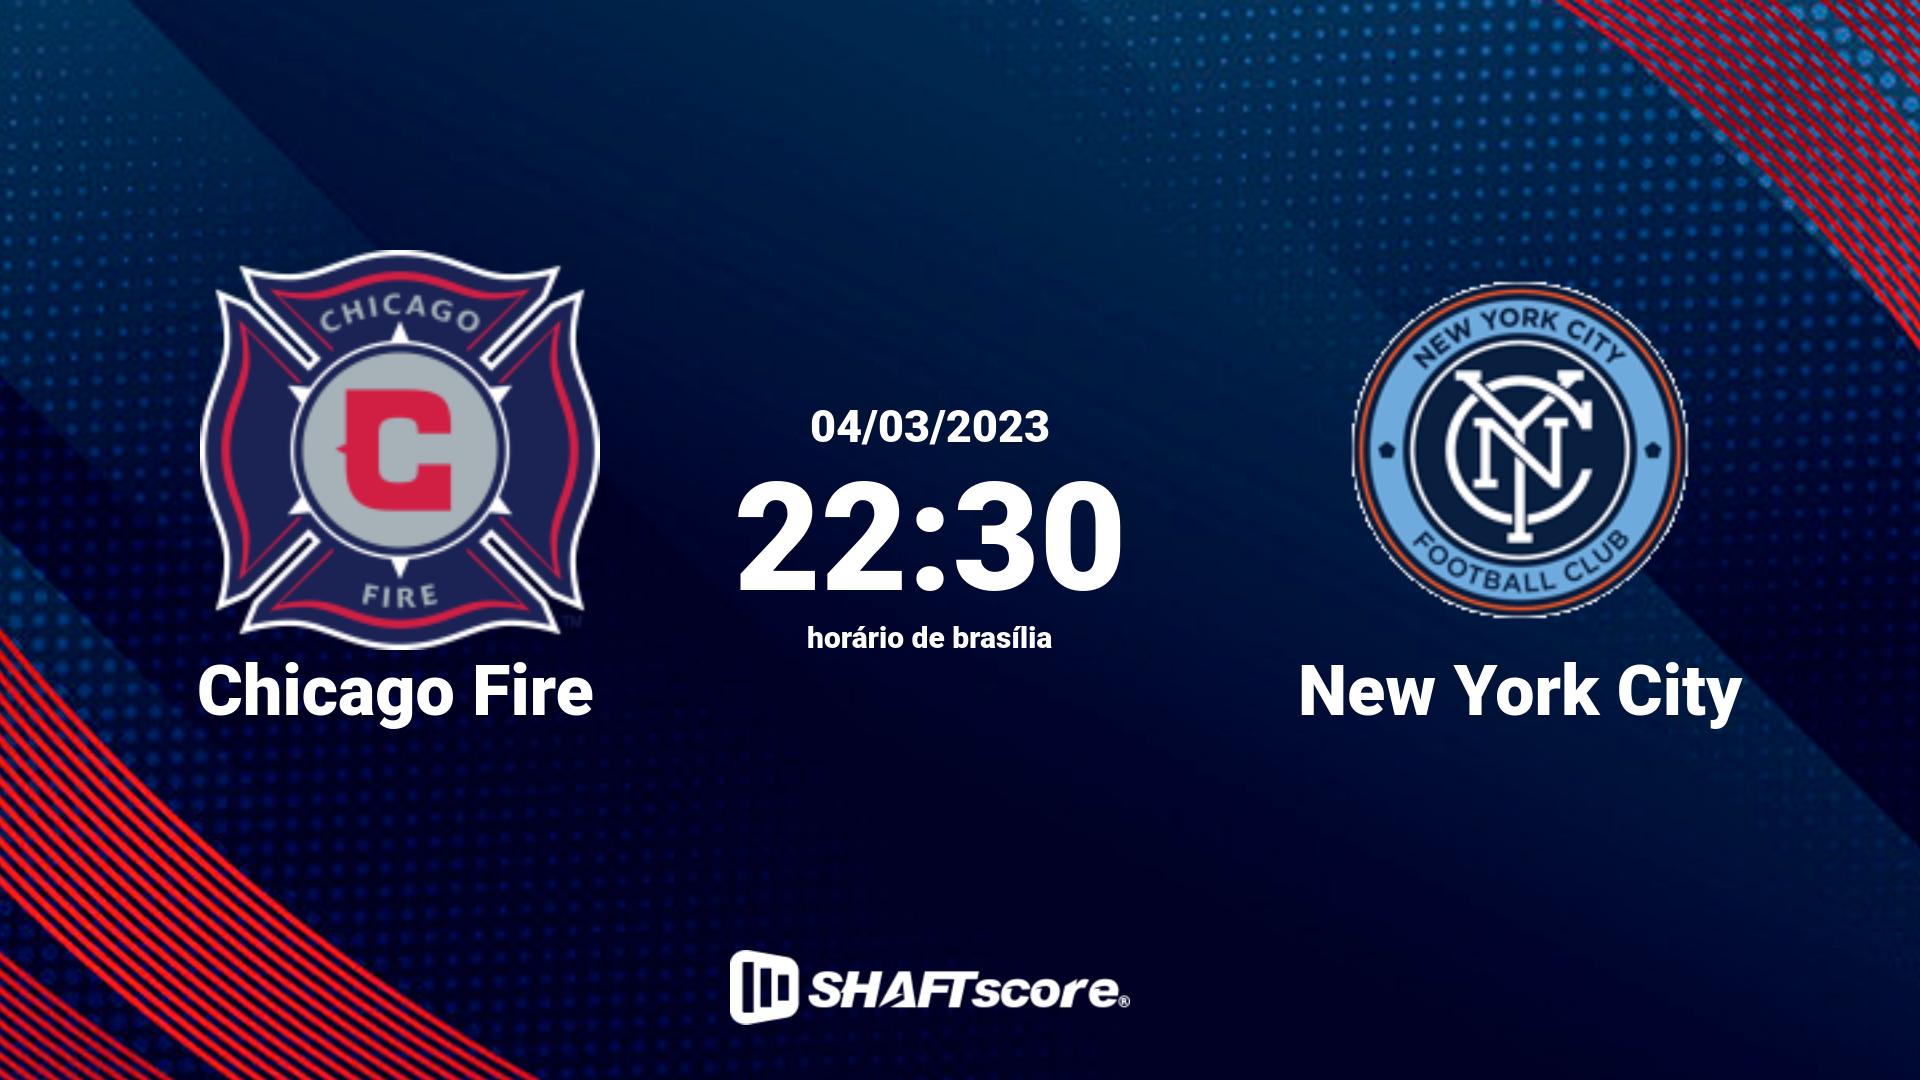 Estatísticas do jogo Chicago Fire vs New York City 04.03 22:30